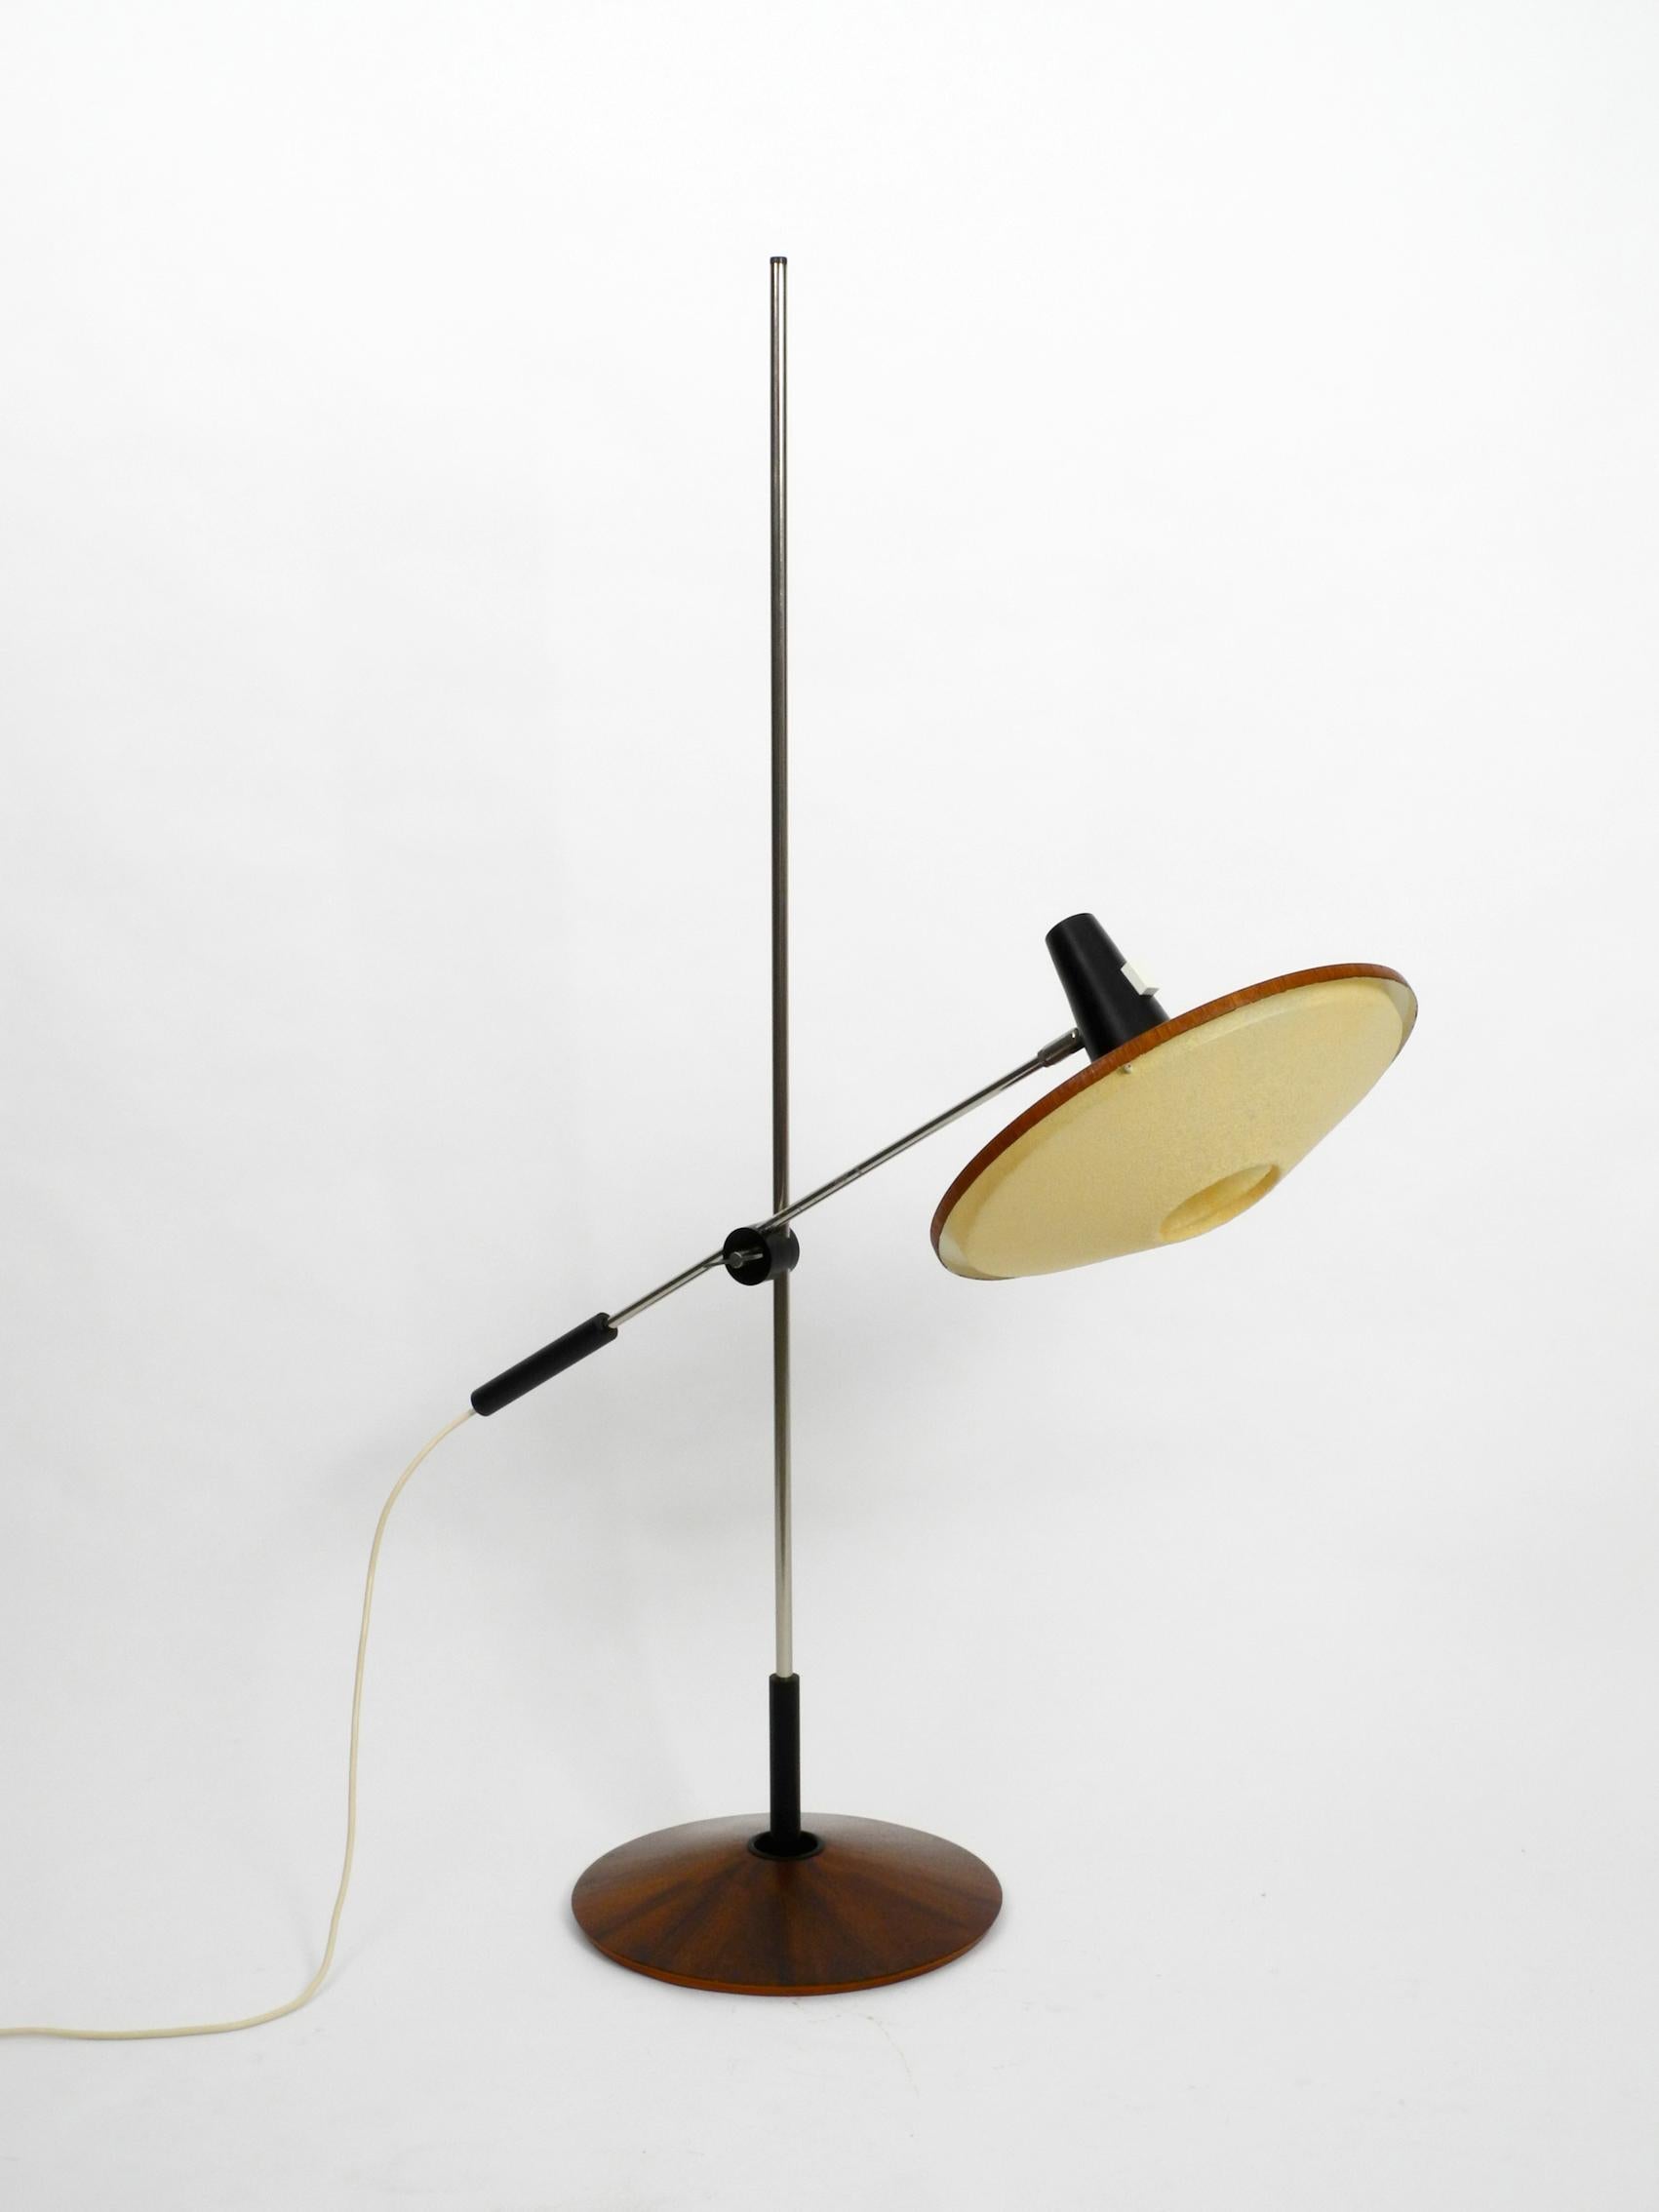 Swiss Mid-Century Modern Floor Lamp by George Frydman for Temde with Teak Veneer